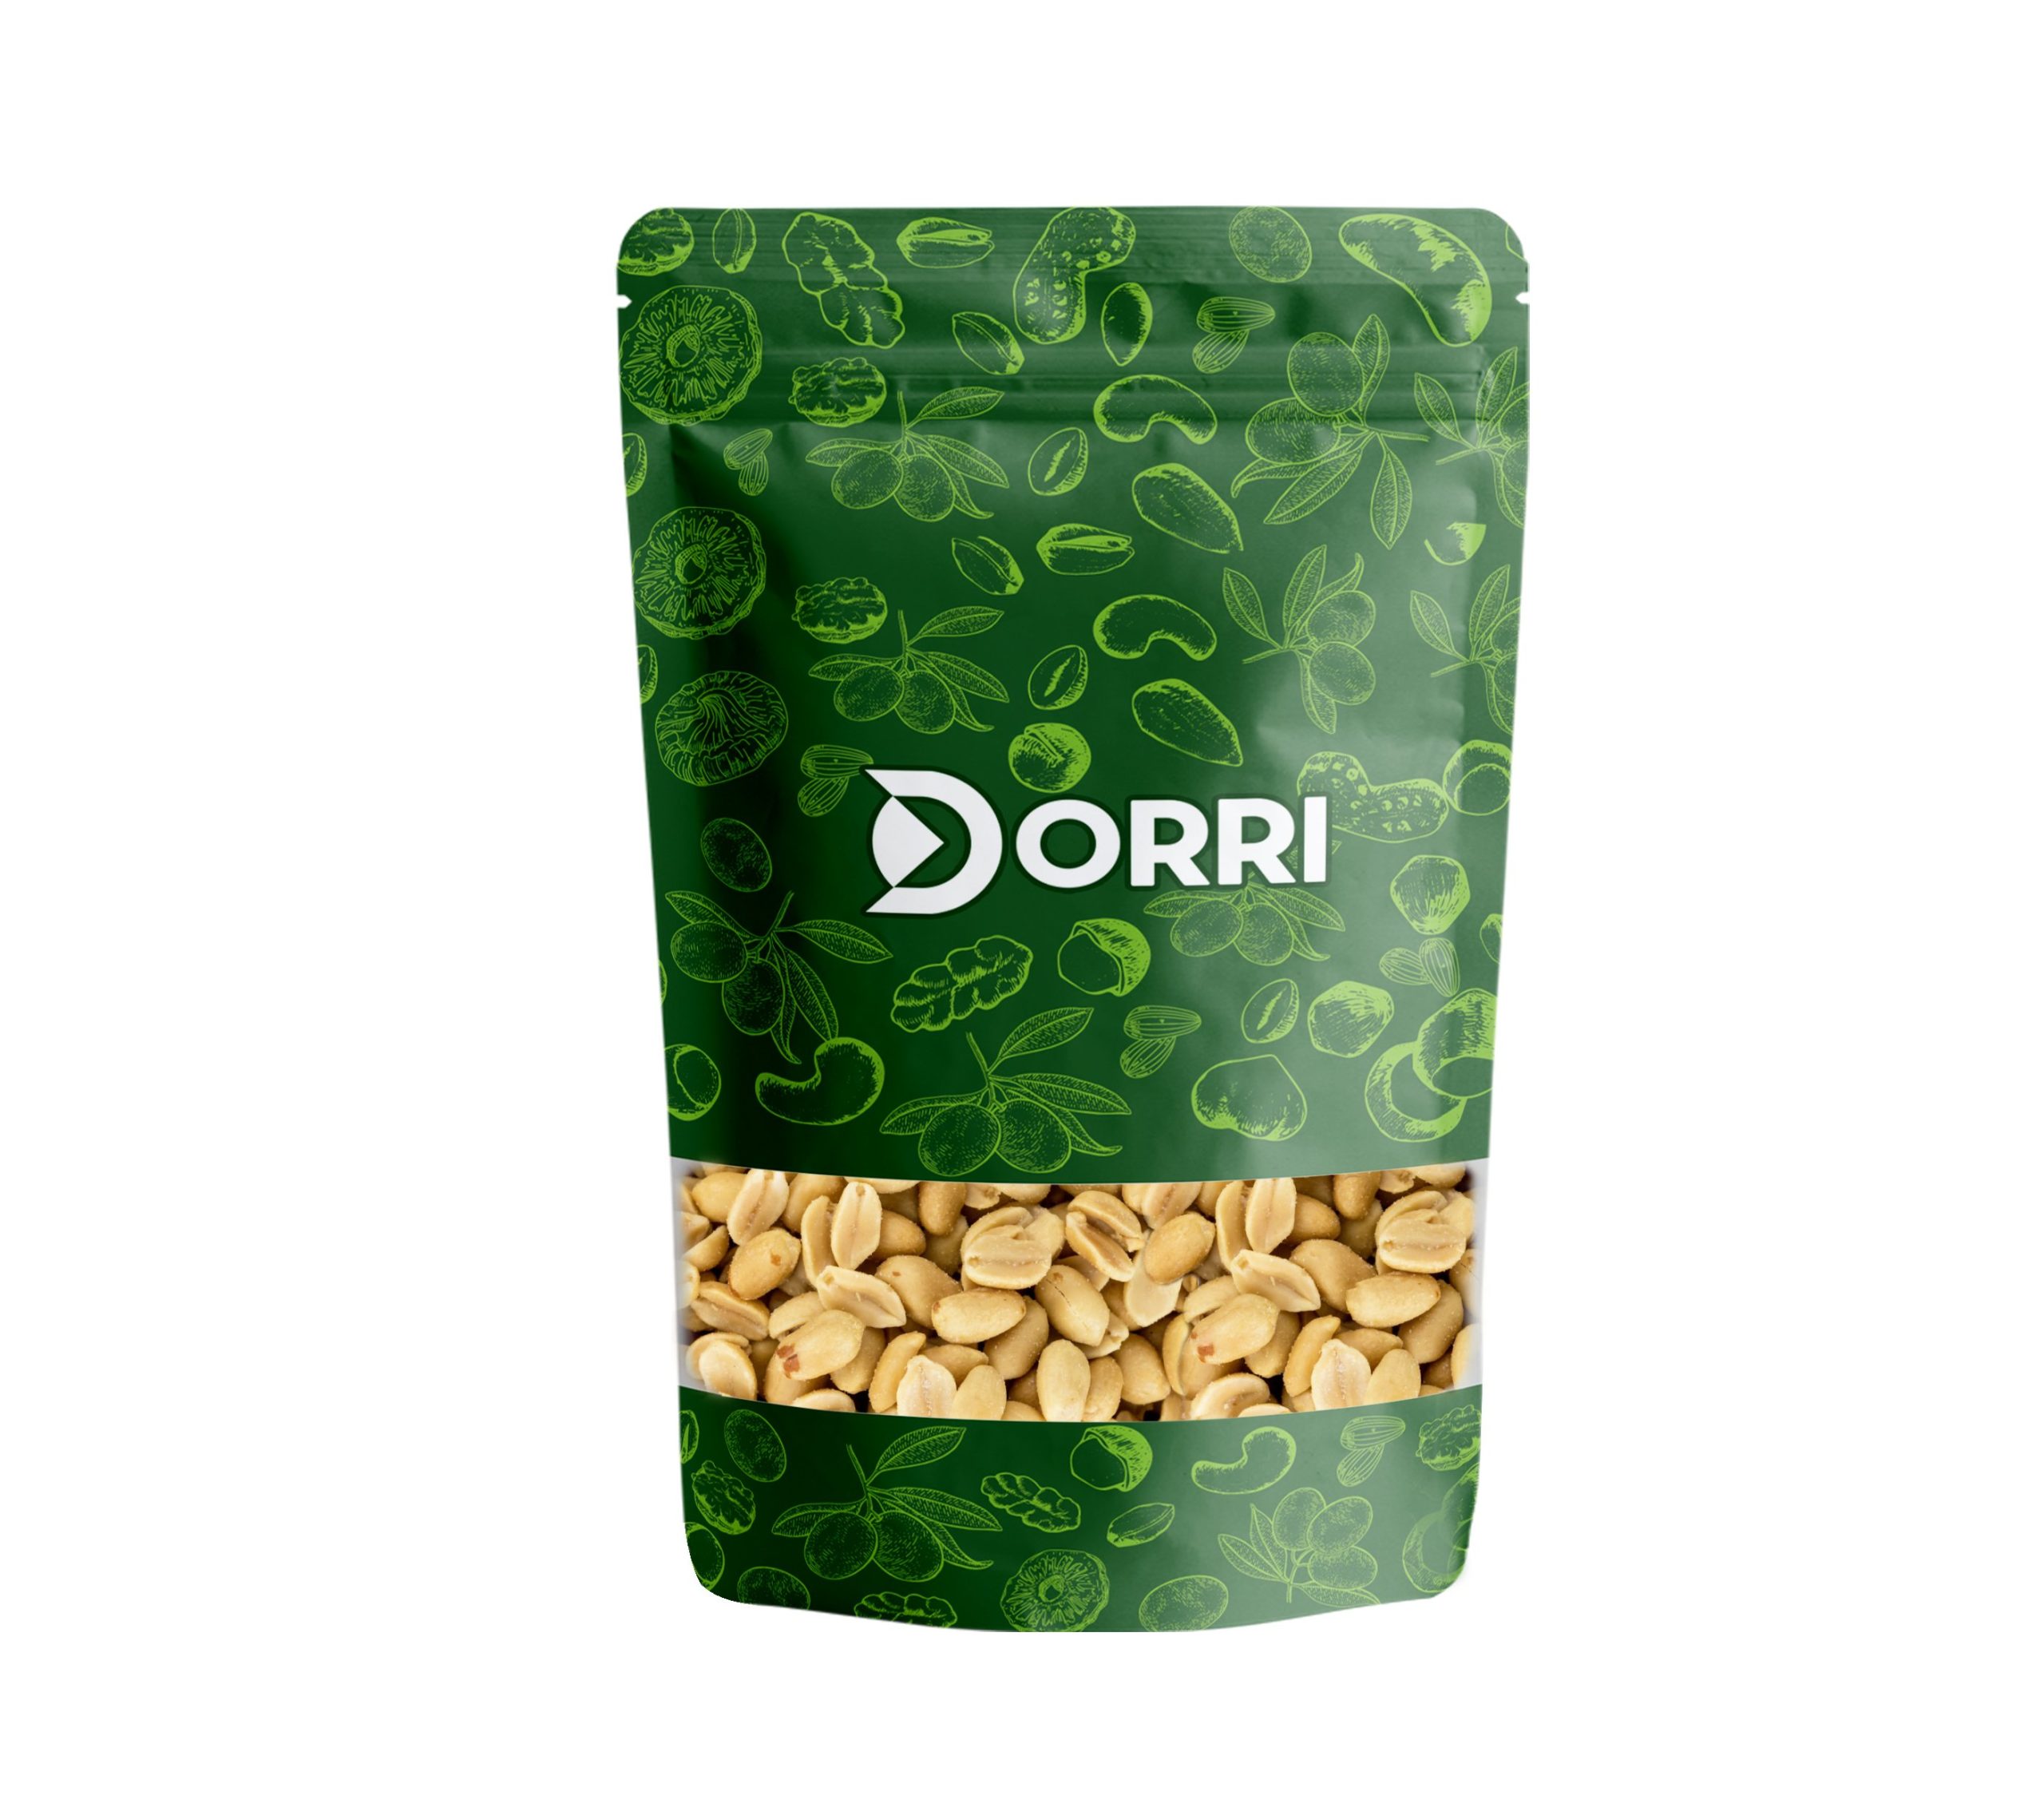 Dorri - Roasted and Salted Peanuts